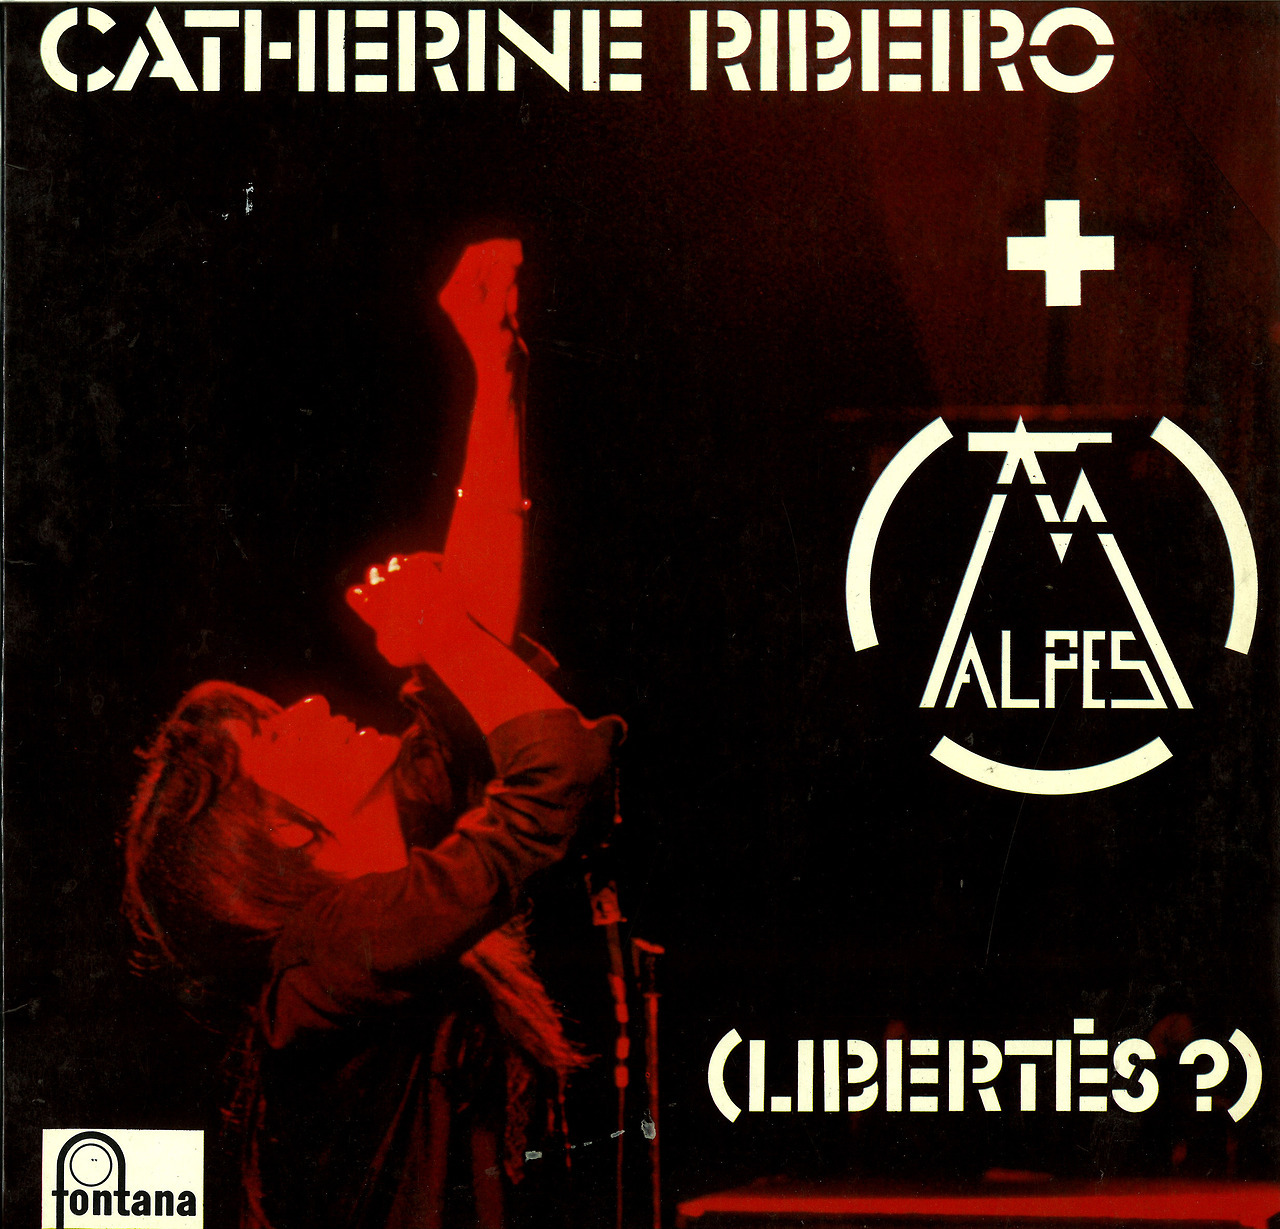 Catherine Ribeiro + Alpes - Libertés?Grupo francés de avanzada vanguardia, guitarras y voces trasladando al oyente al macrocosmos. Un eco rojo en la eterna soledad.
Para amantes de los sonidos siderales, pink floyd, ácidos y cerveza...